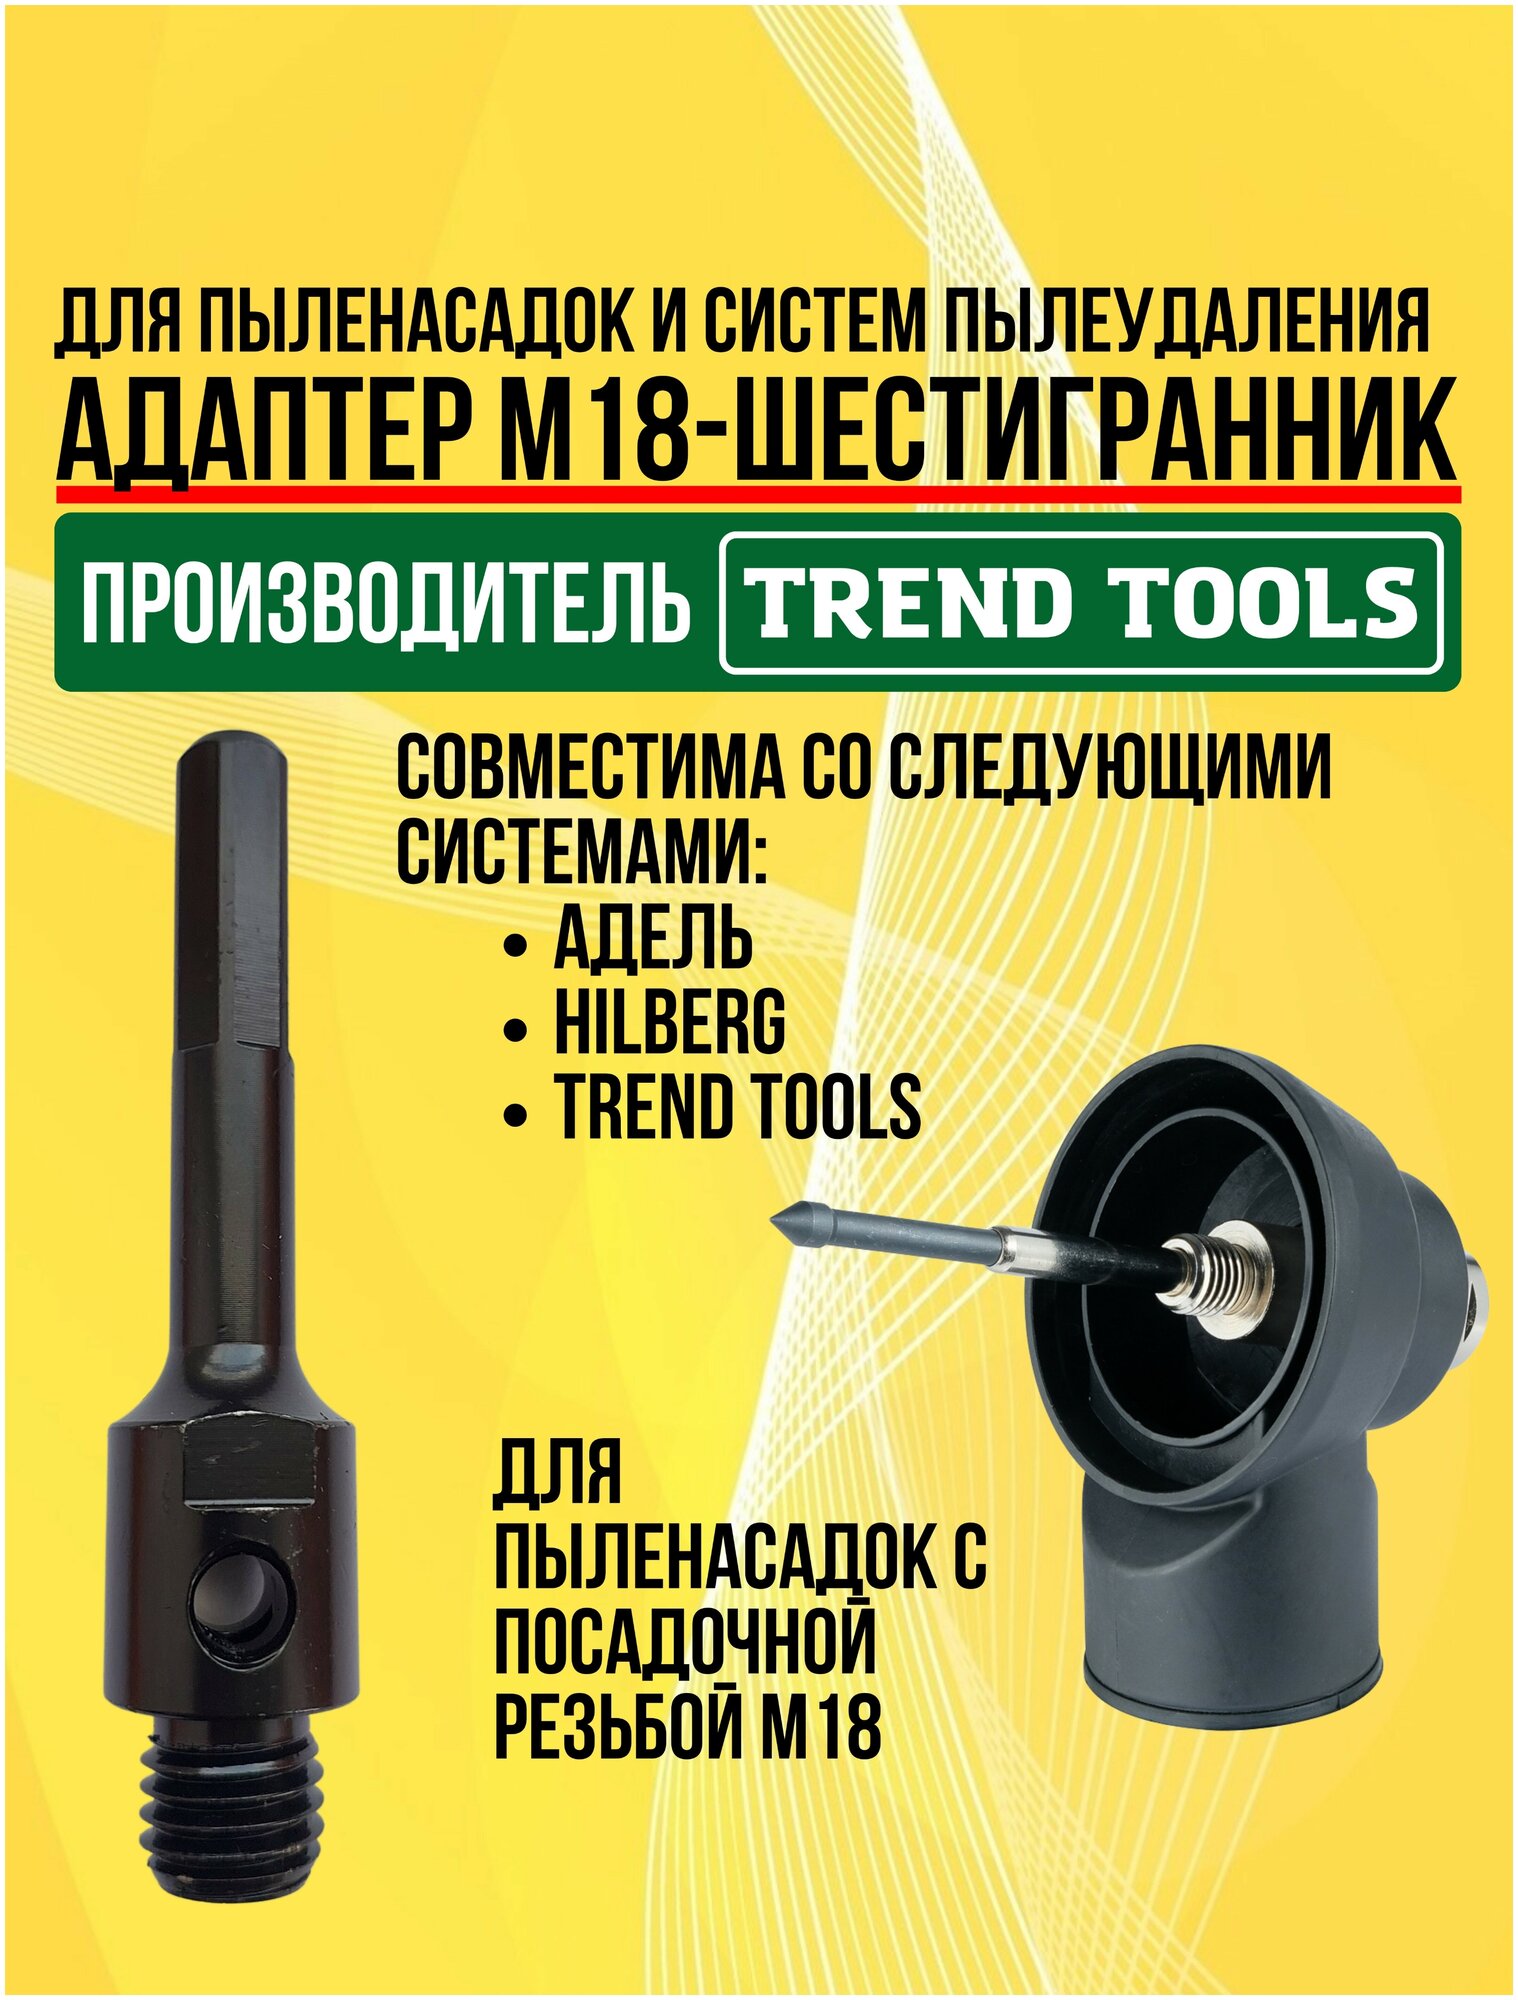 Адаптер М18-шестигранник для системы пылеудаления для дрели Trend Tools